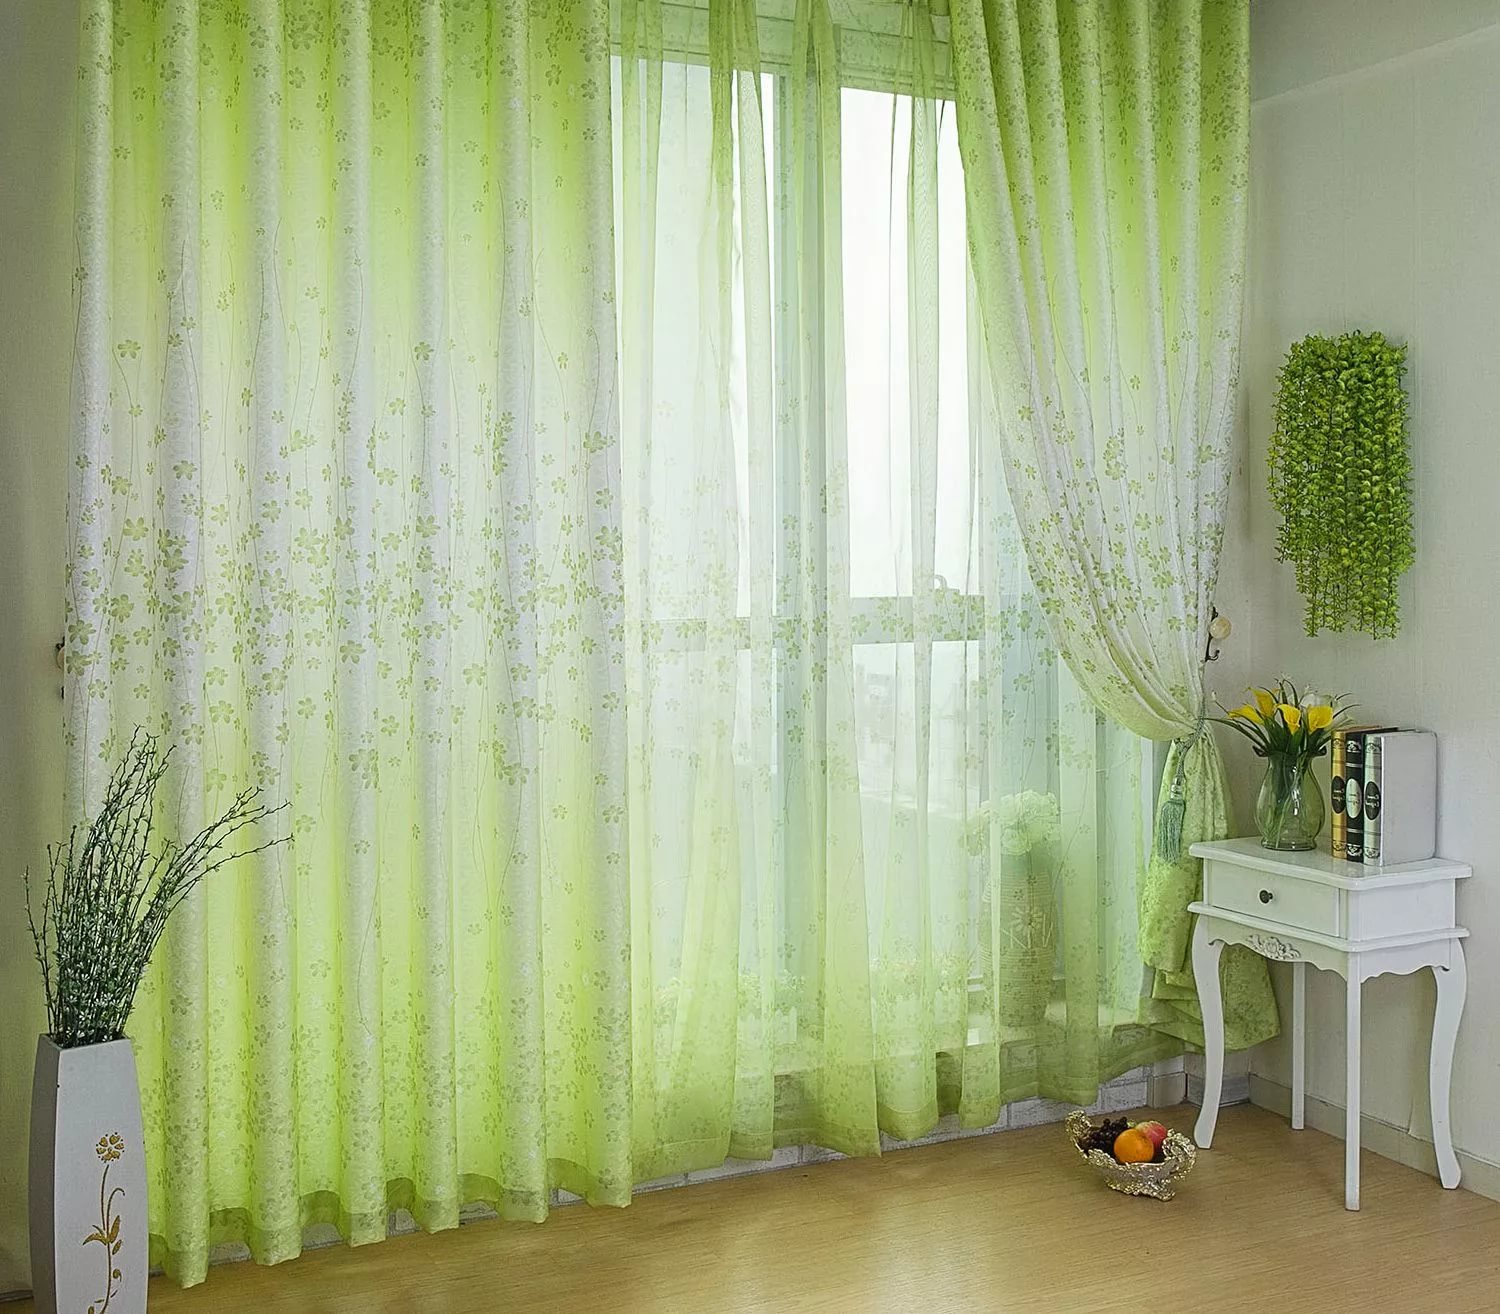 Finestra del soggiorno con tende trasparenti verdastre